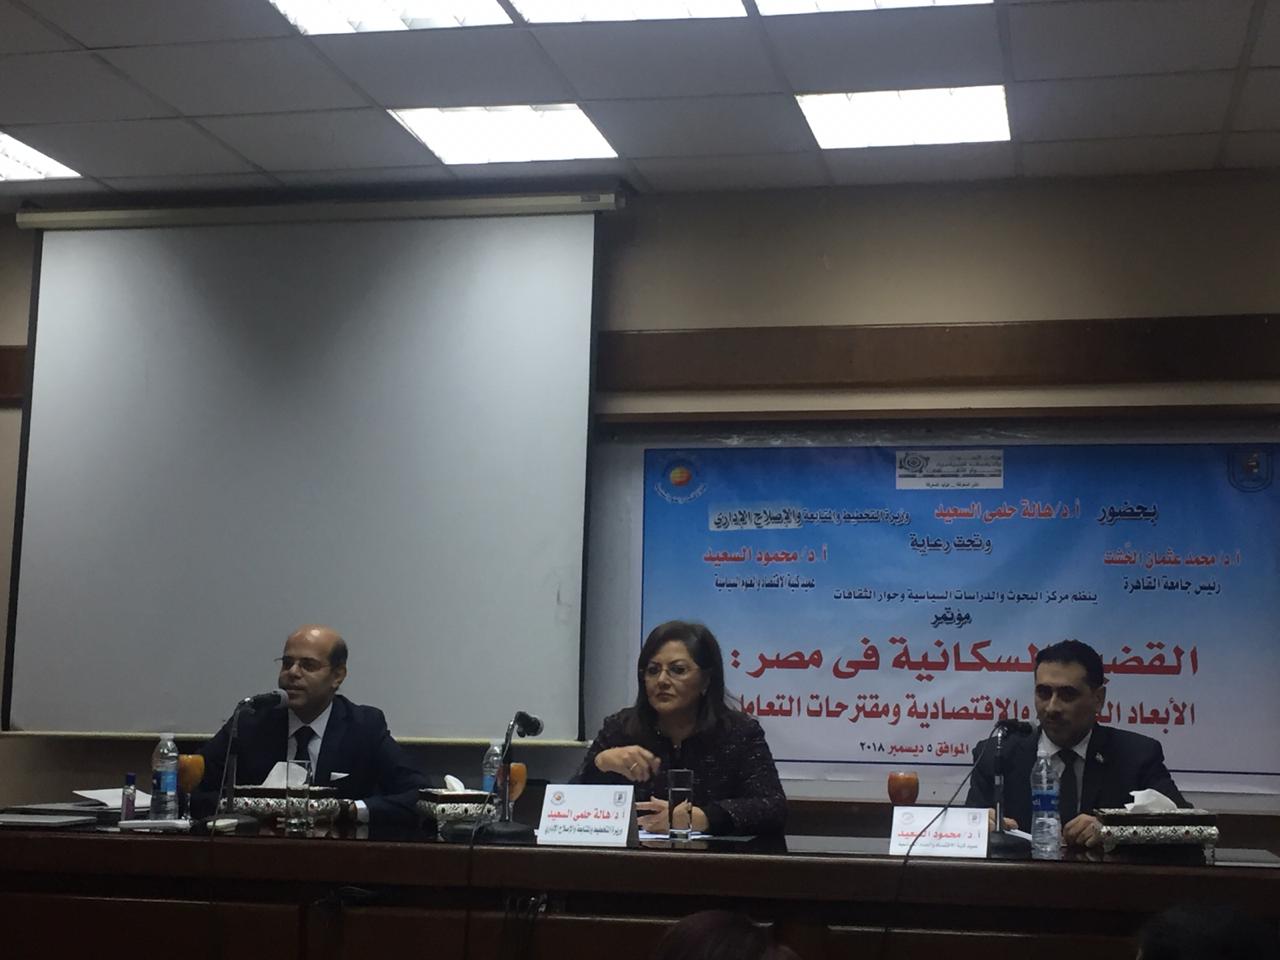 مؤتمر القضية السكانية فى مصر الأبعاد الثقافية والاقتصادية والاستراتيجية ومقترحات التعامل،  (2)